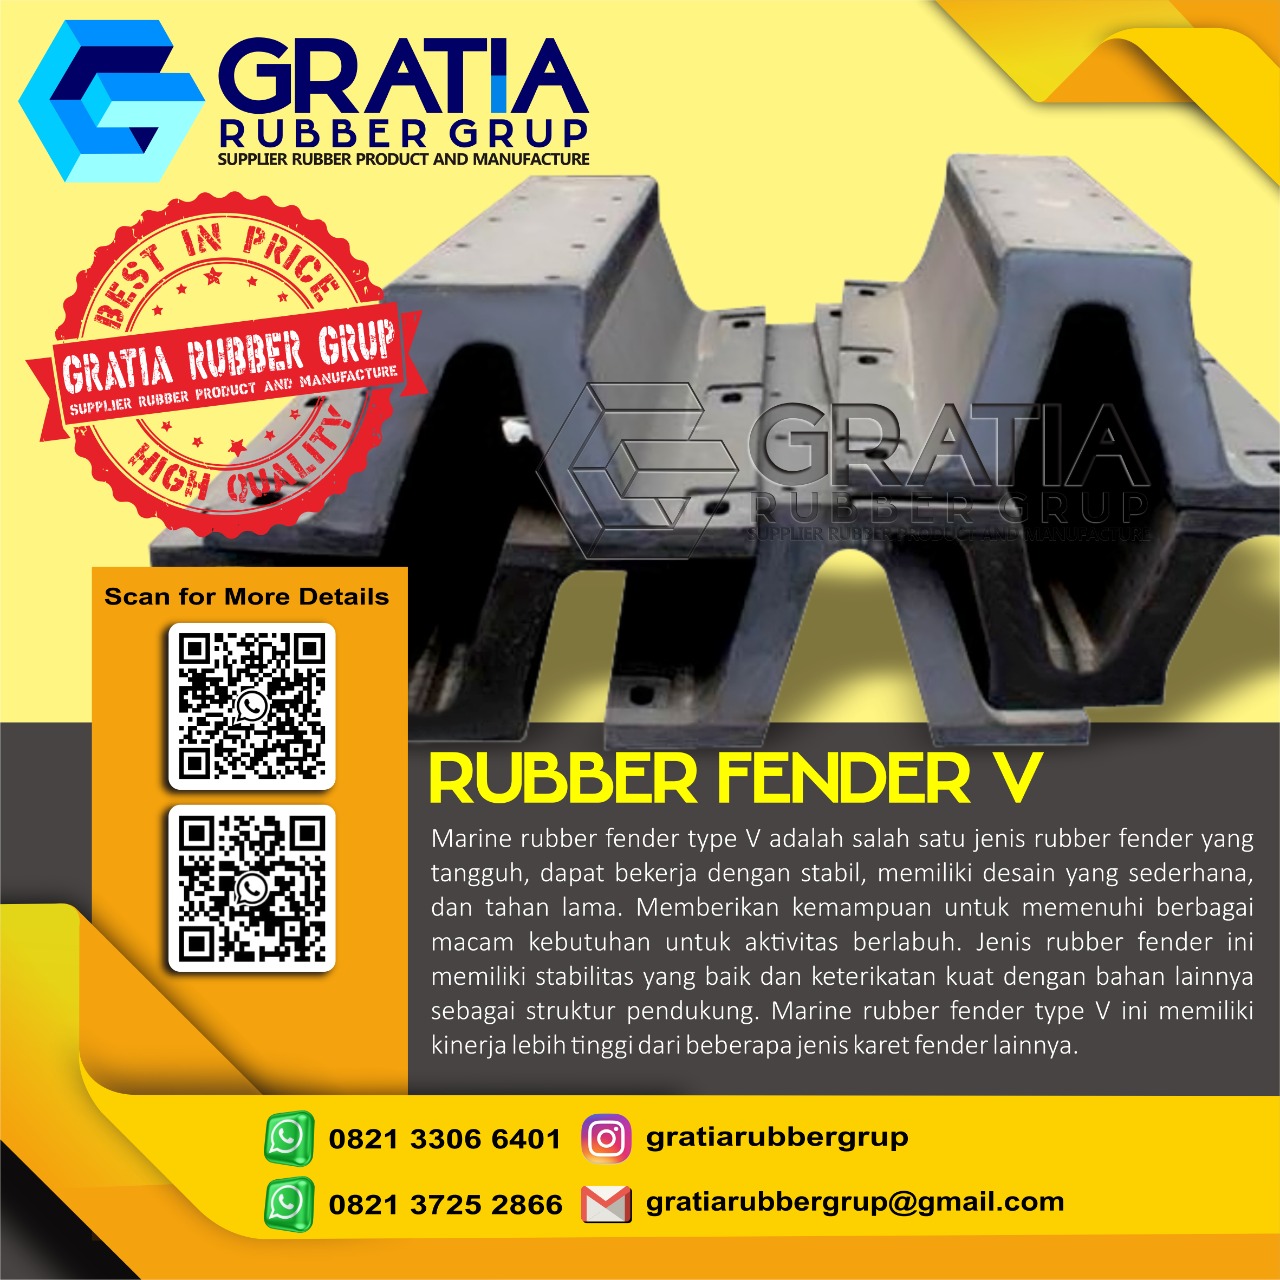 Distributor Rubber Fender Boat Murah Dan Berkualitas  Melayani Pengiriman Ke Jakarta Pusat Hub 0821 3306 0461